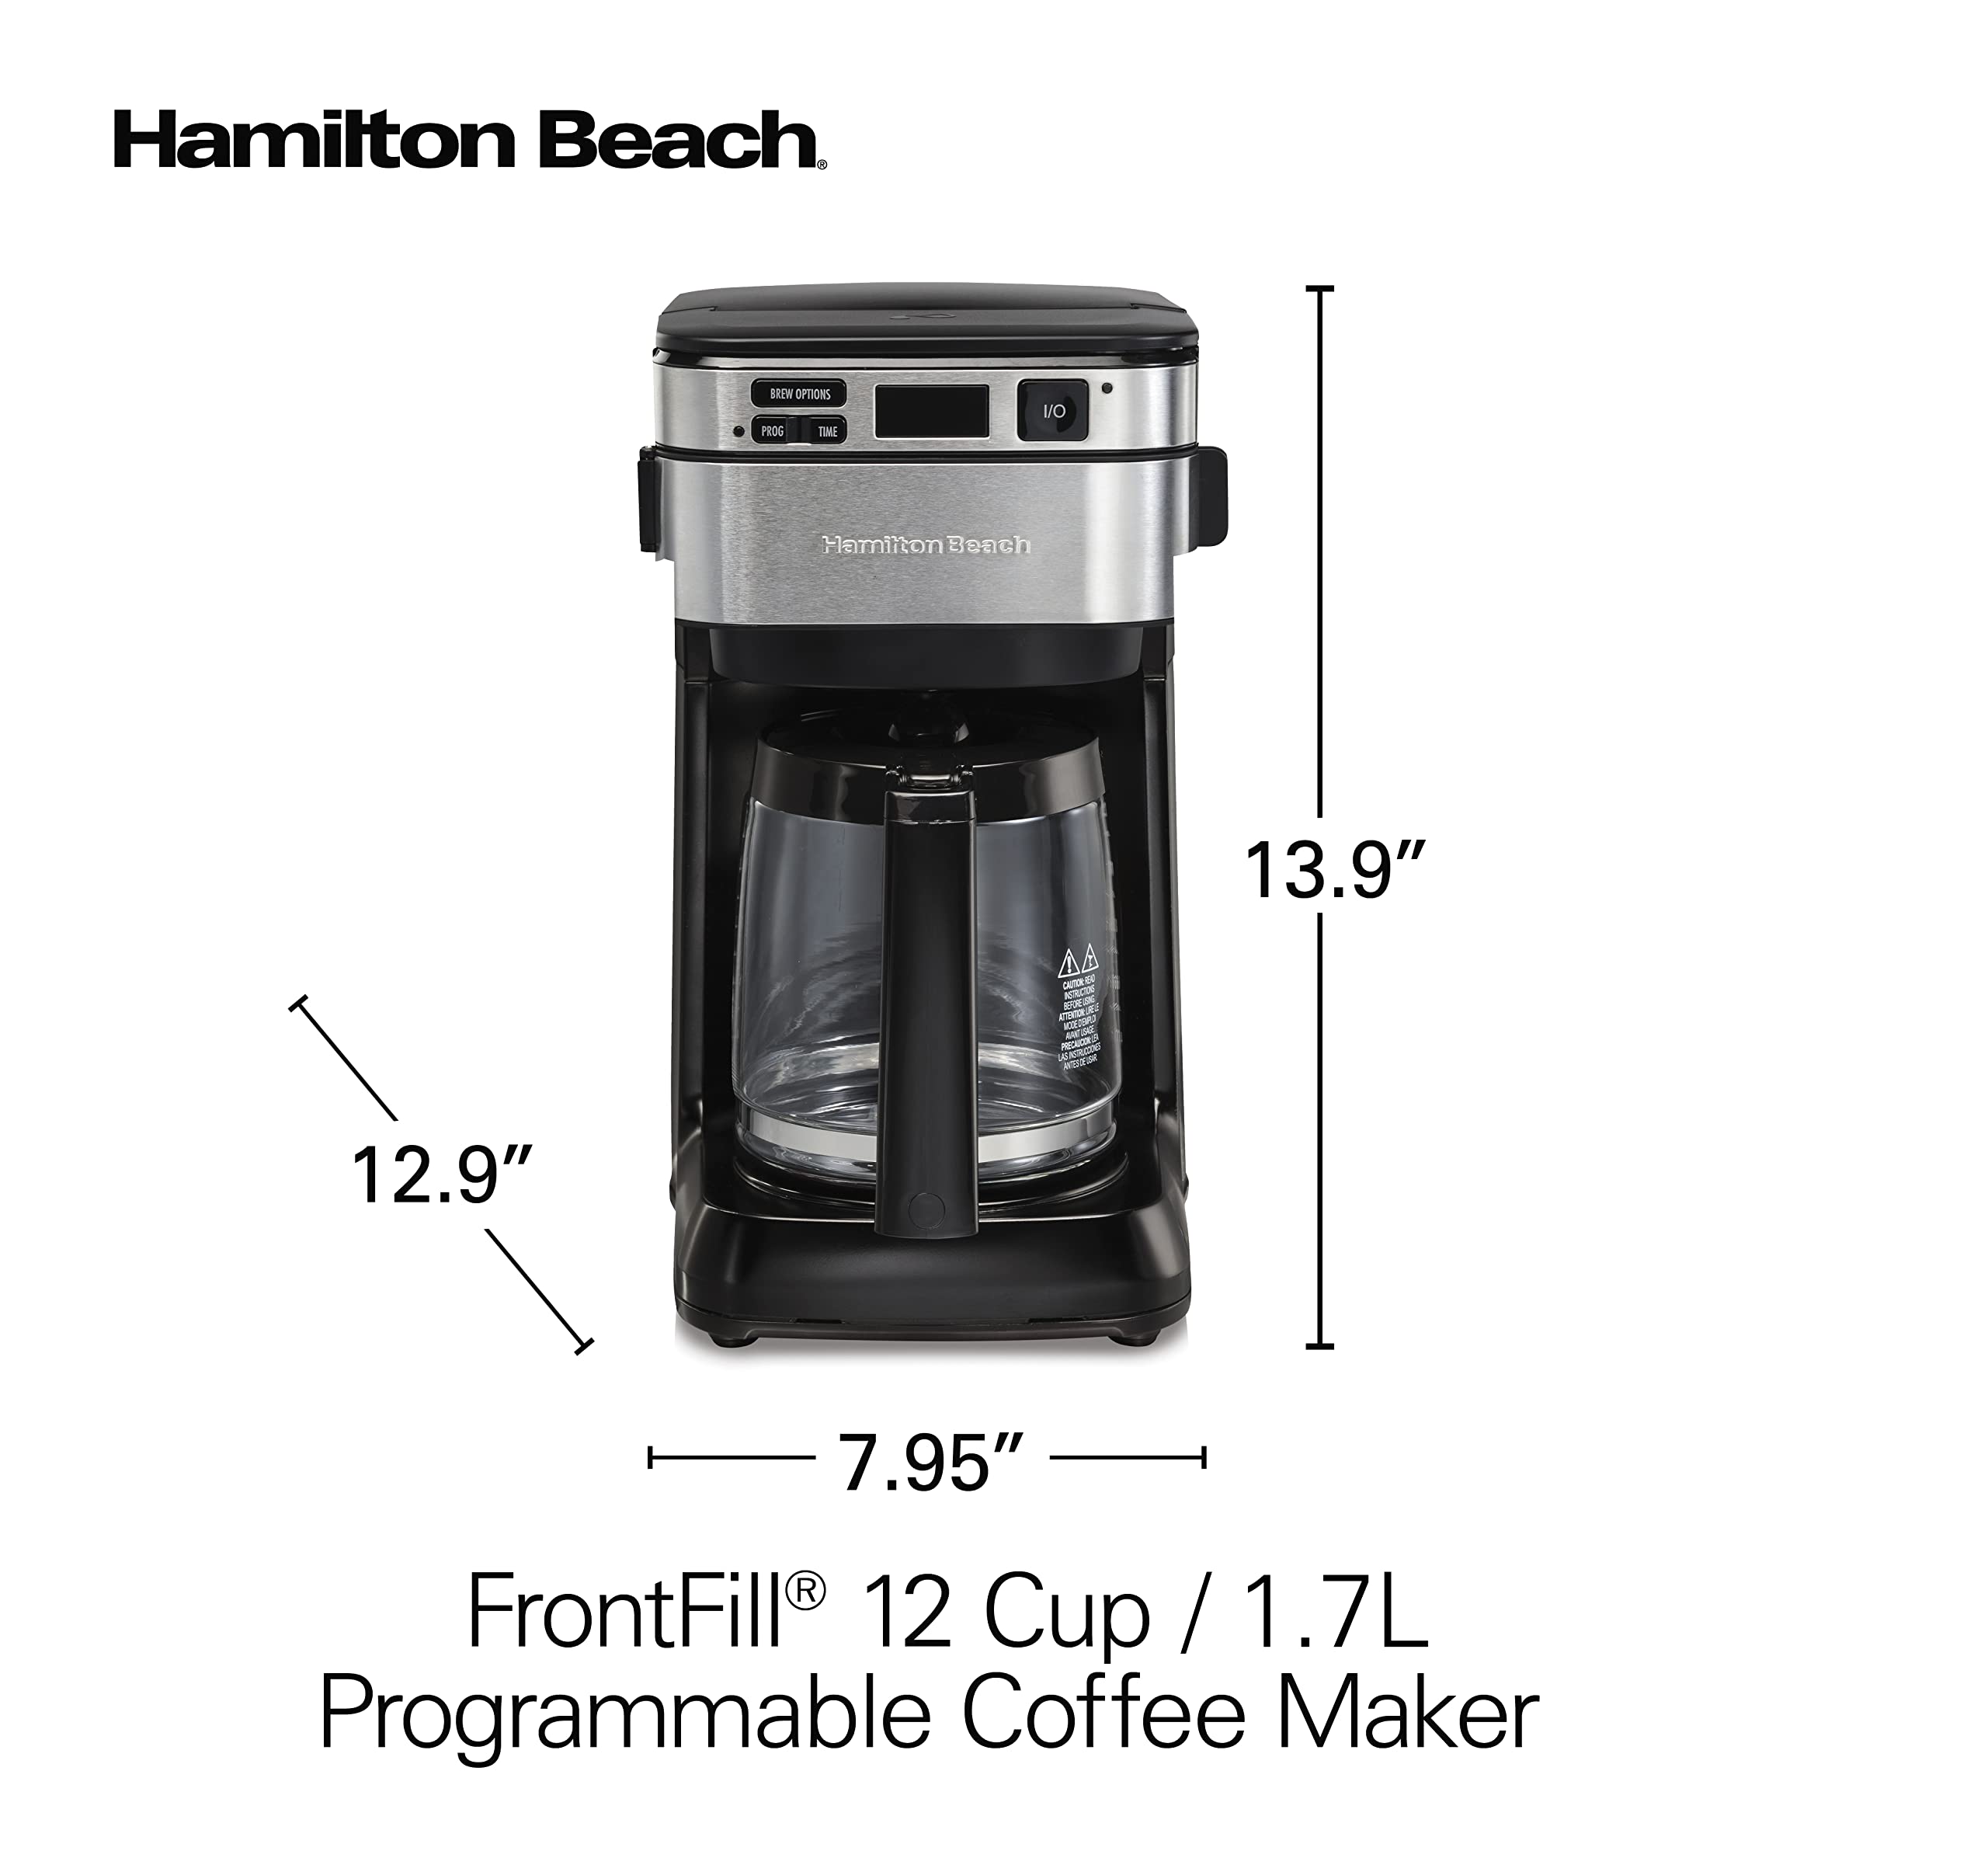  هاملتون بيتش ماكينة تحضير القهوة القابلة للبرمجة سعة 12 كوب من فرونت فيل®، ابريق زجاجي سعة 1.7 لتر